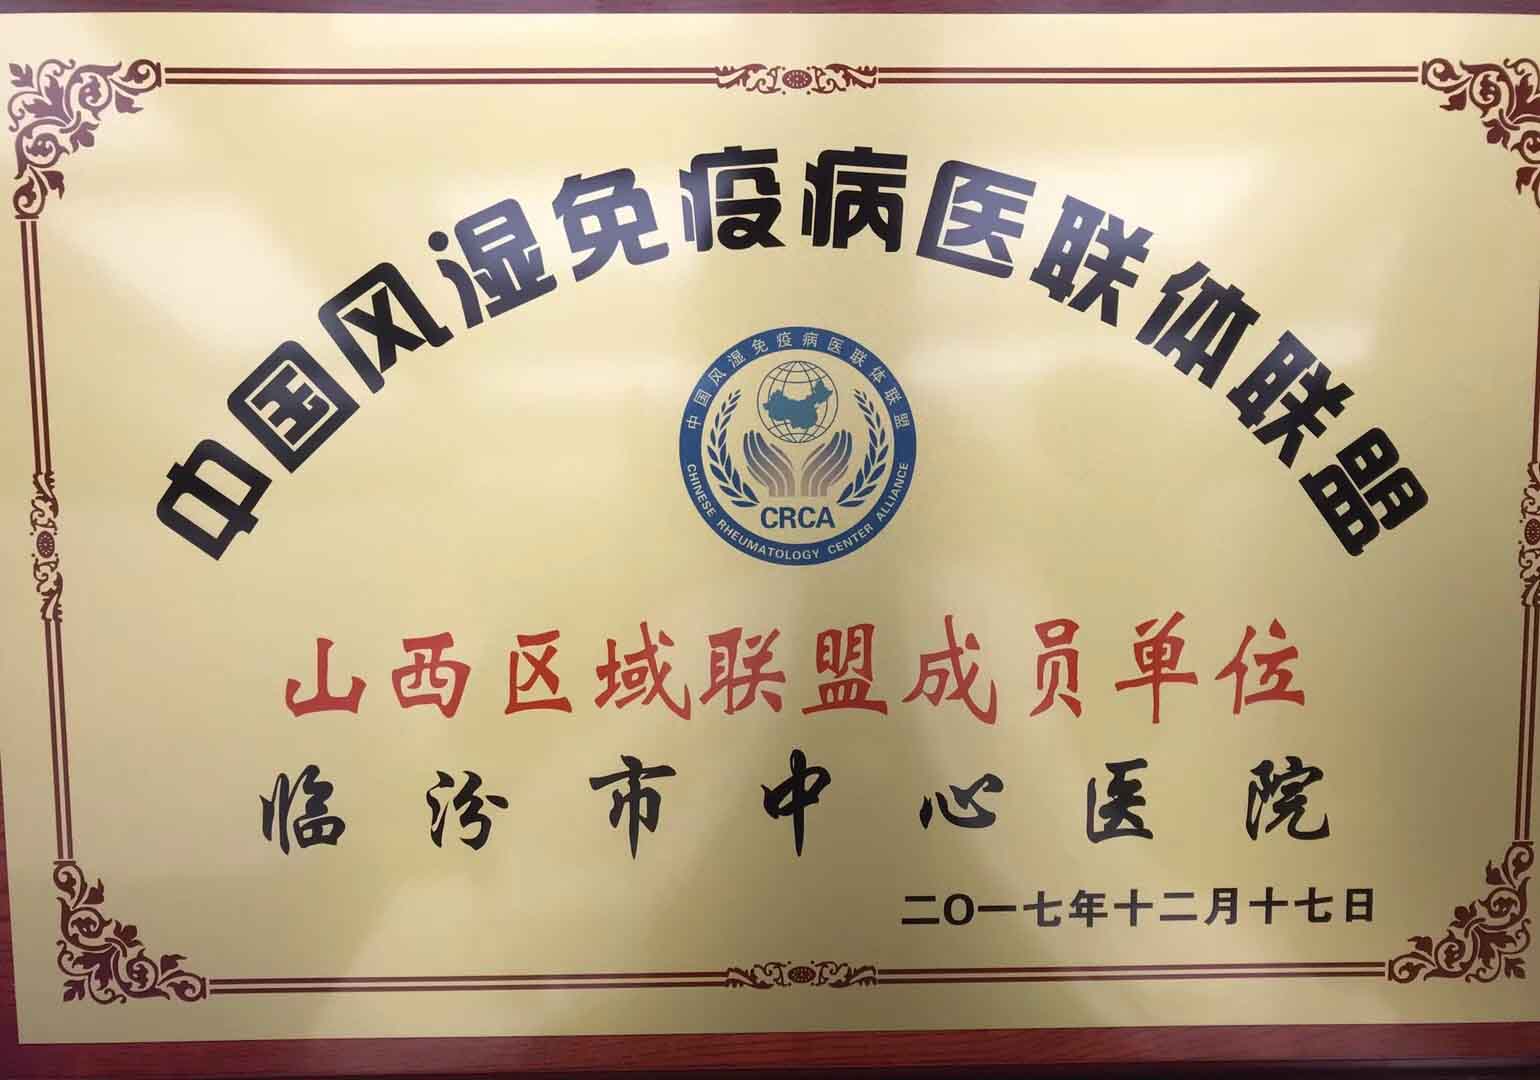 中国风湿免疫病区医联体联盟成员单位